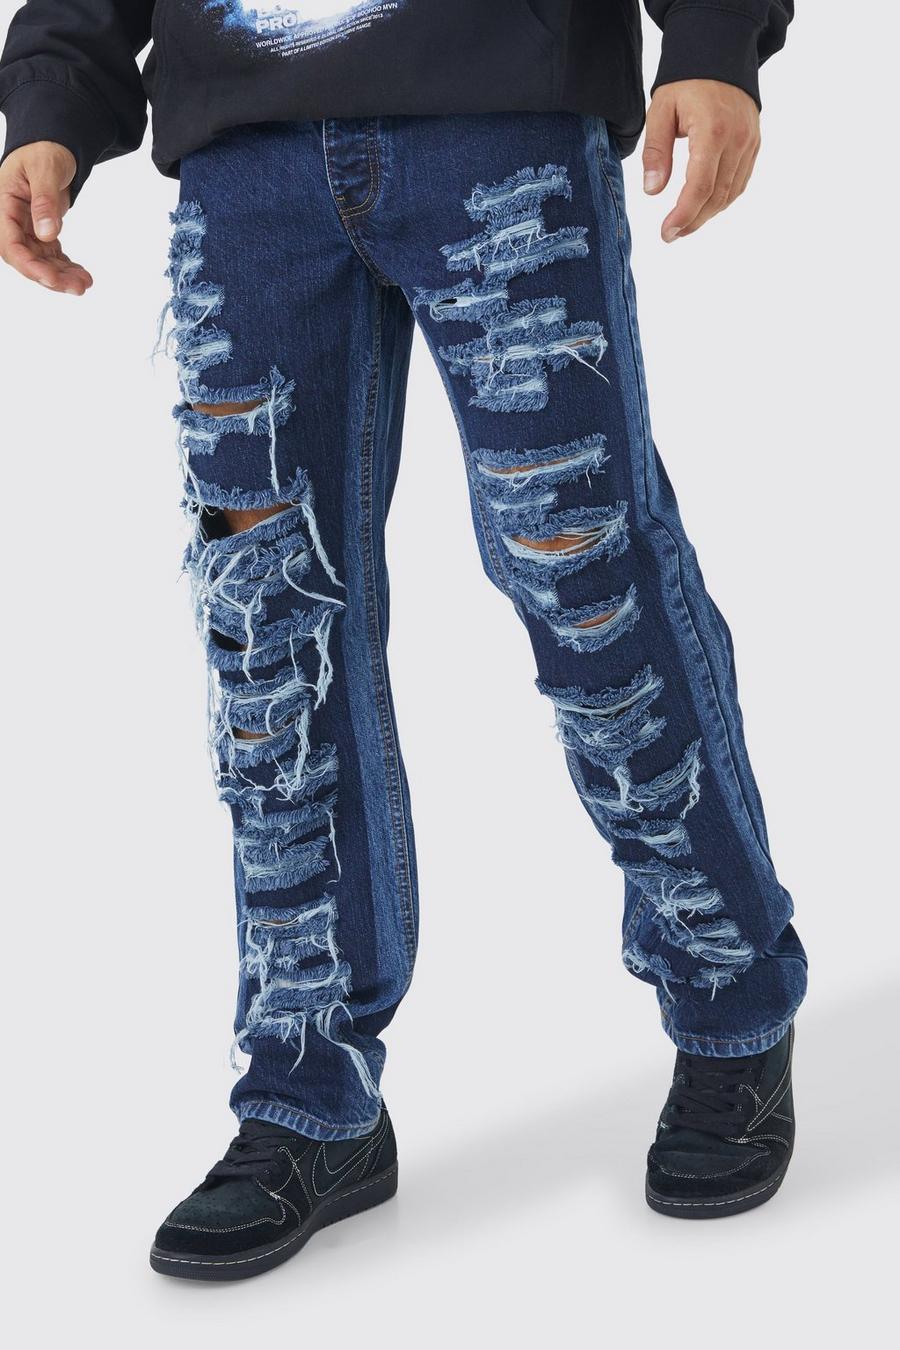 Lockere Jeans mit Rissen, Indigo